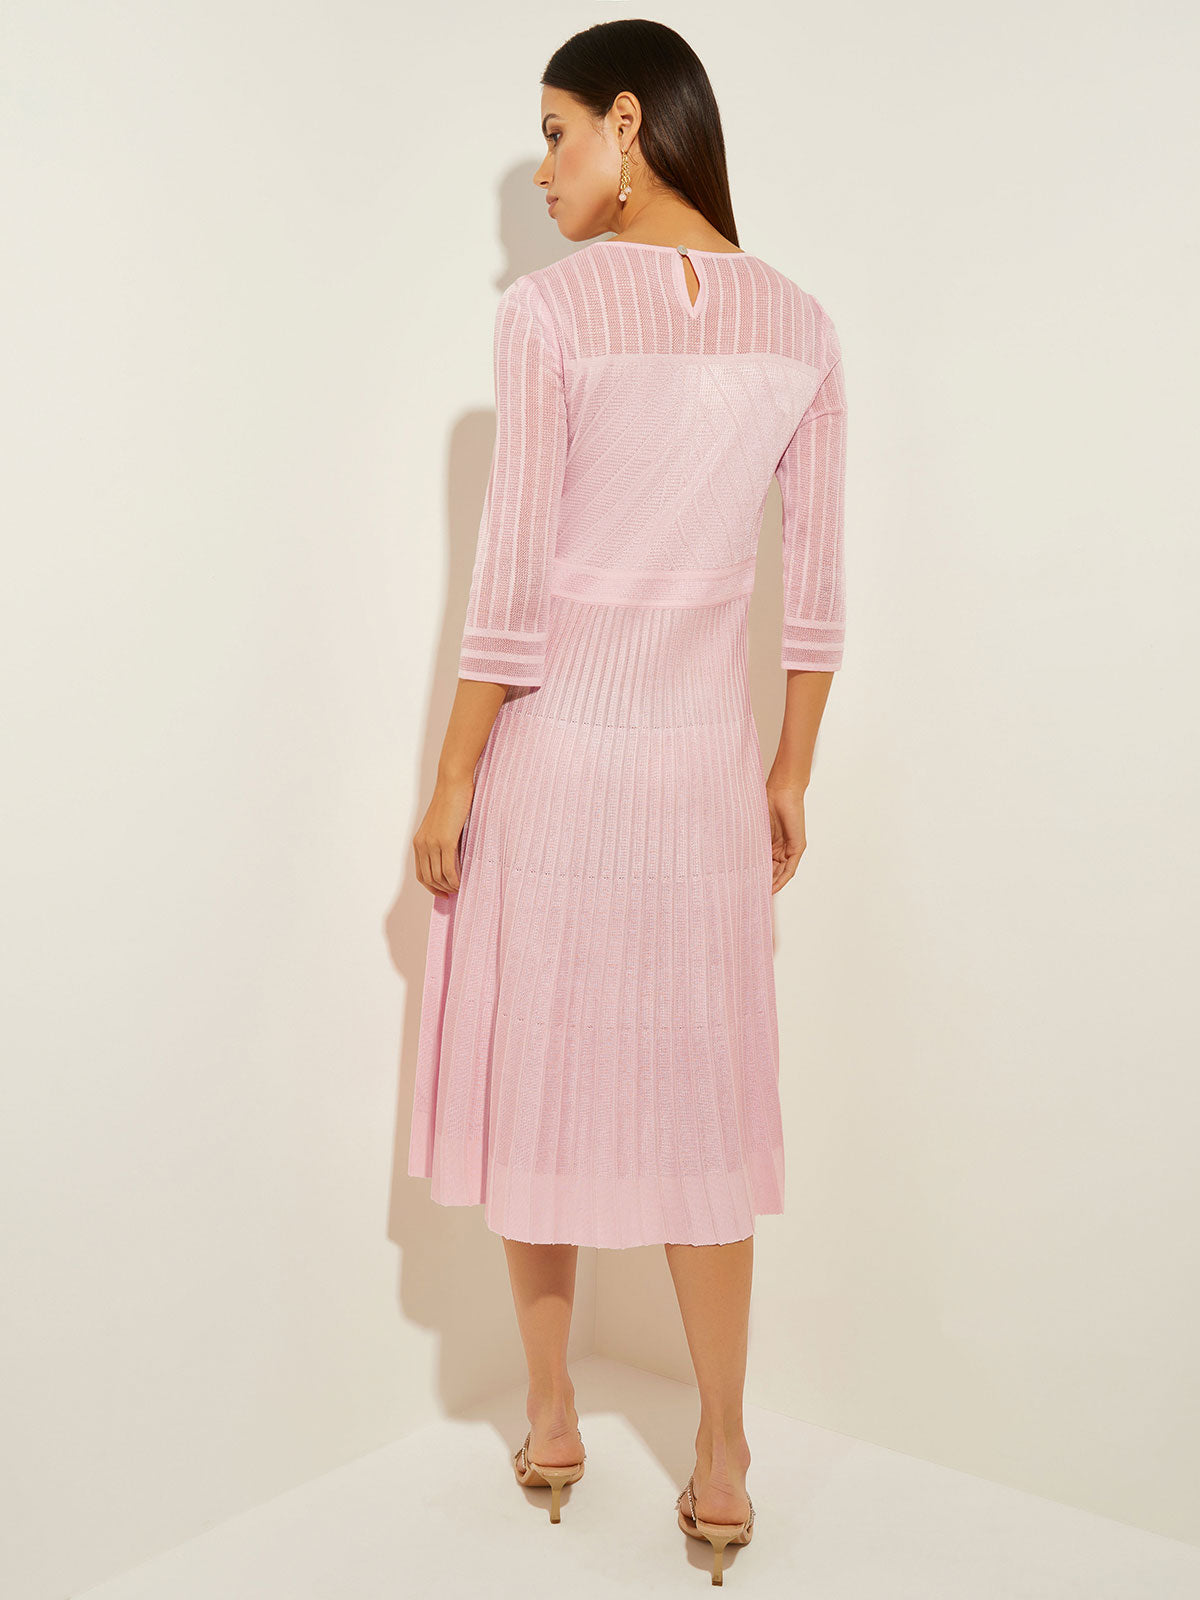 Geometric Dress - Pleated Midi Dress